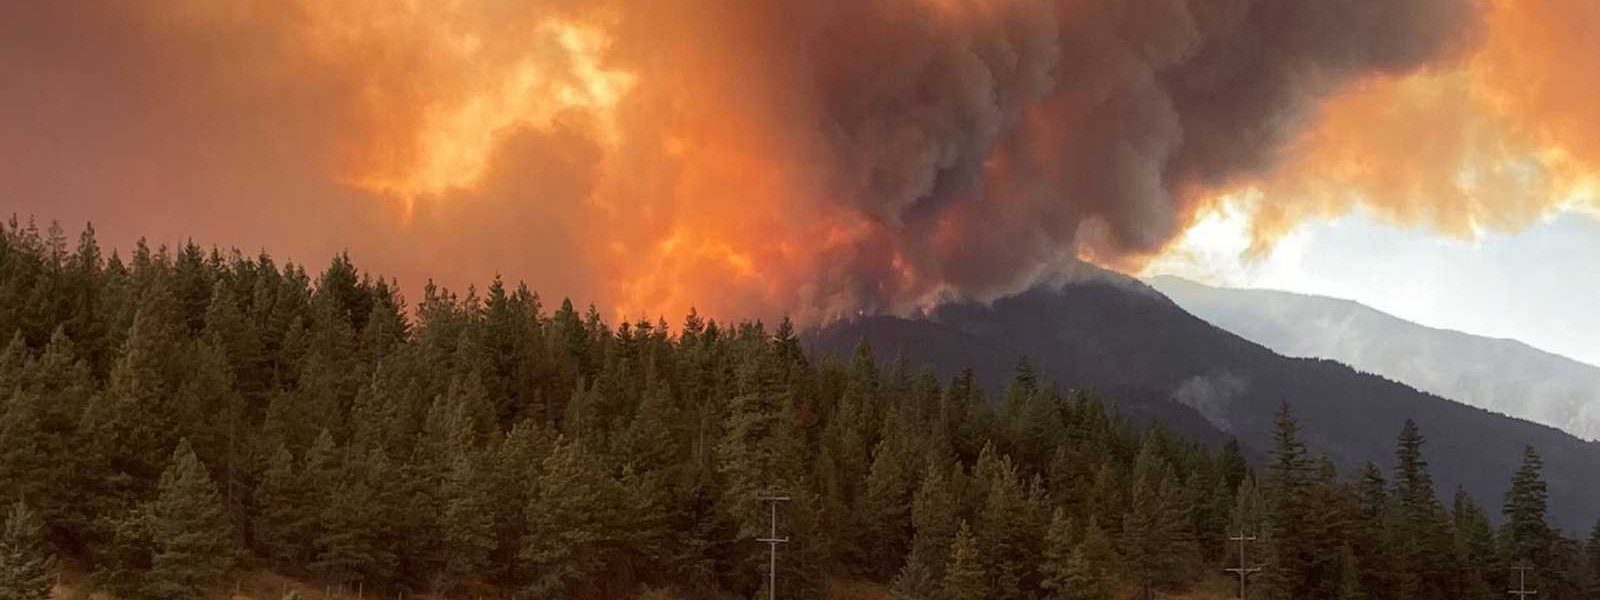 Columbia Británica en Canadá se declara en estado de emergencia tras fuertes incendios forestales